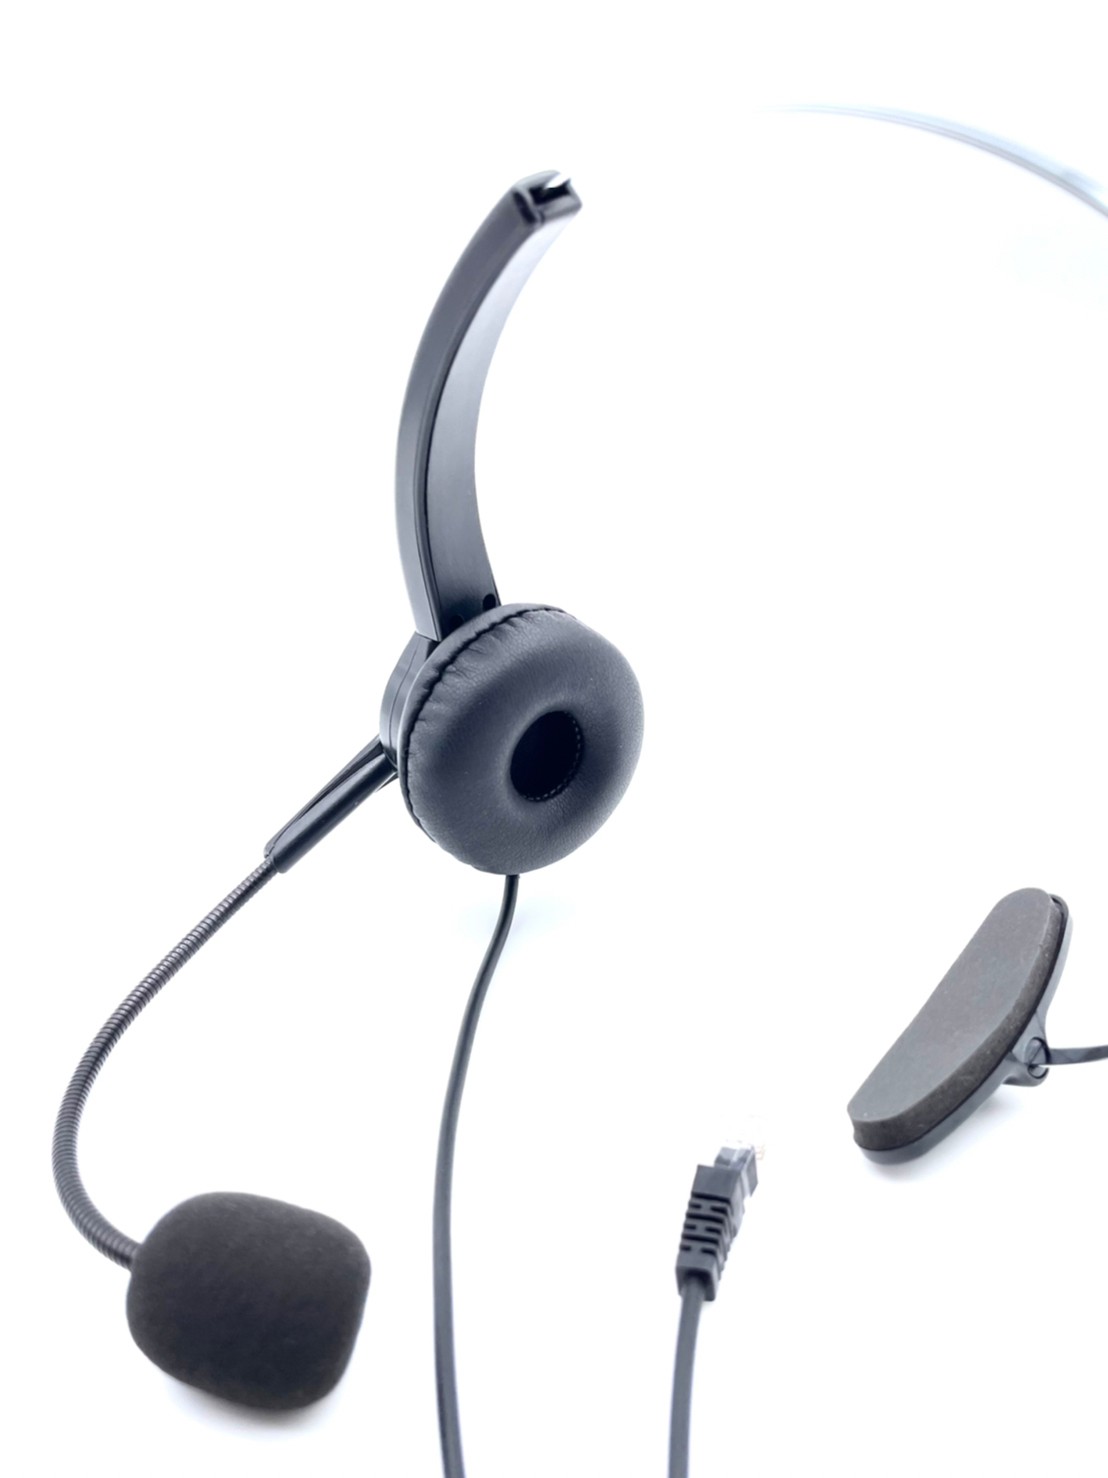 780元 電話耳機 Headset 國洋TENTEL K-362 專用電話耳機麥克風 銀行行銷 客服 總機 醫院 公家機關電話耳機